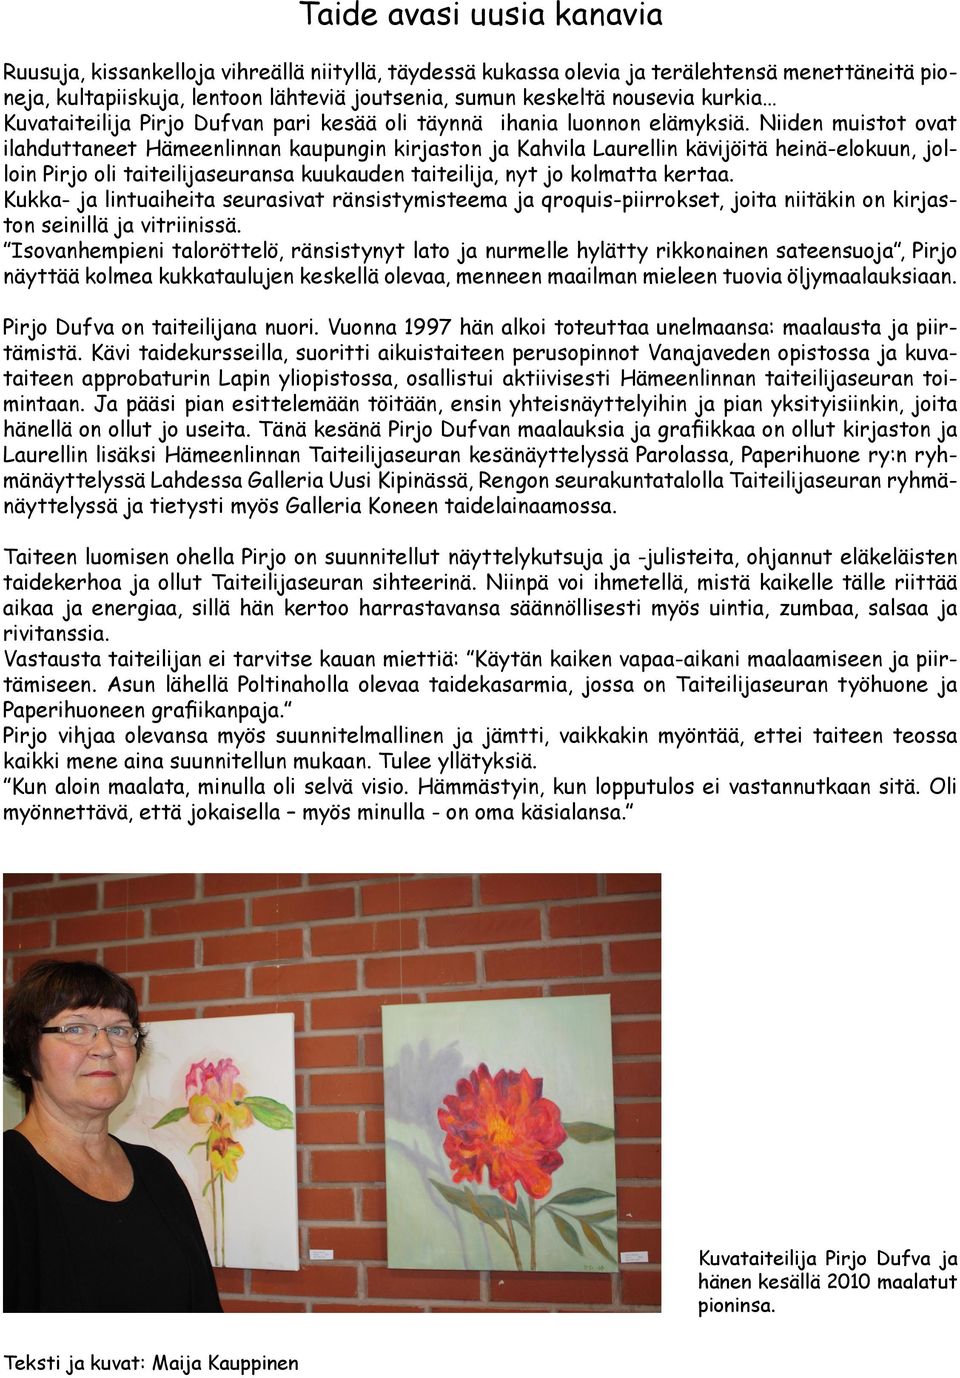 Niiden muistot ovat ilahduttaneet Hämeenlinnan kaupungin kirjaston ja Kahvila Laurellin kävijöitä heinä-elokuun, jolloin Pirjo oli taiteilijaseuransa kuukauden taiteilija, nyt jo kolmatta kertaa.